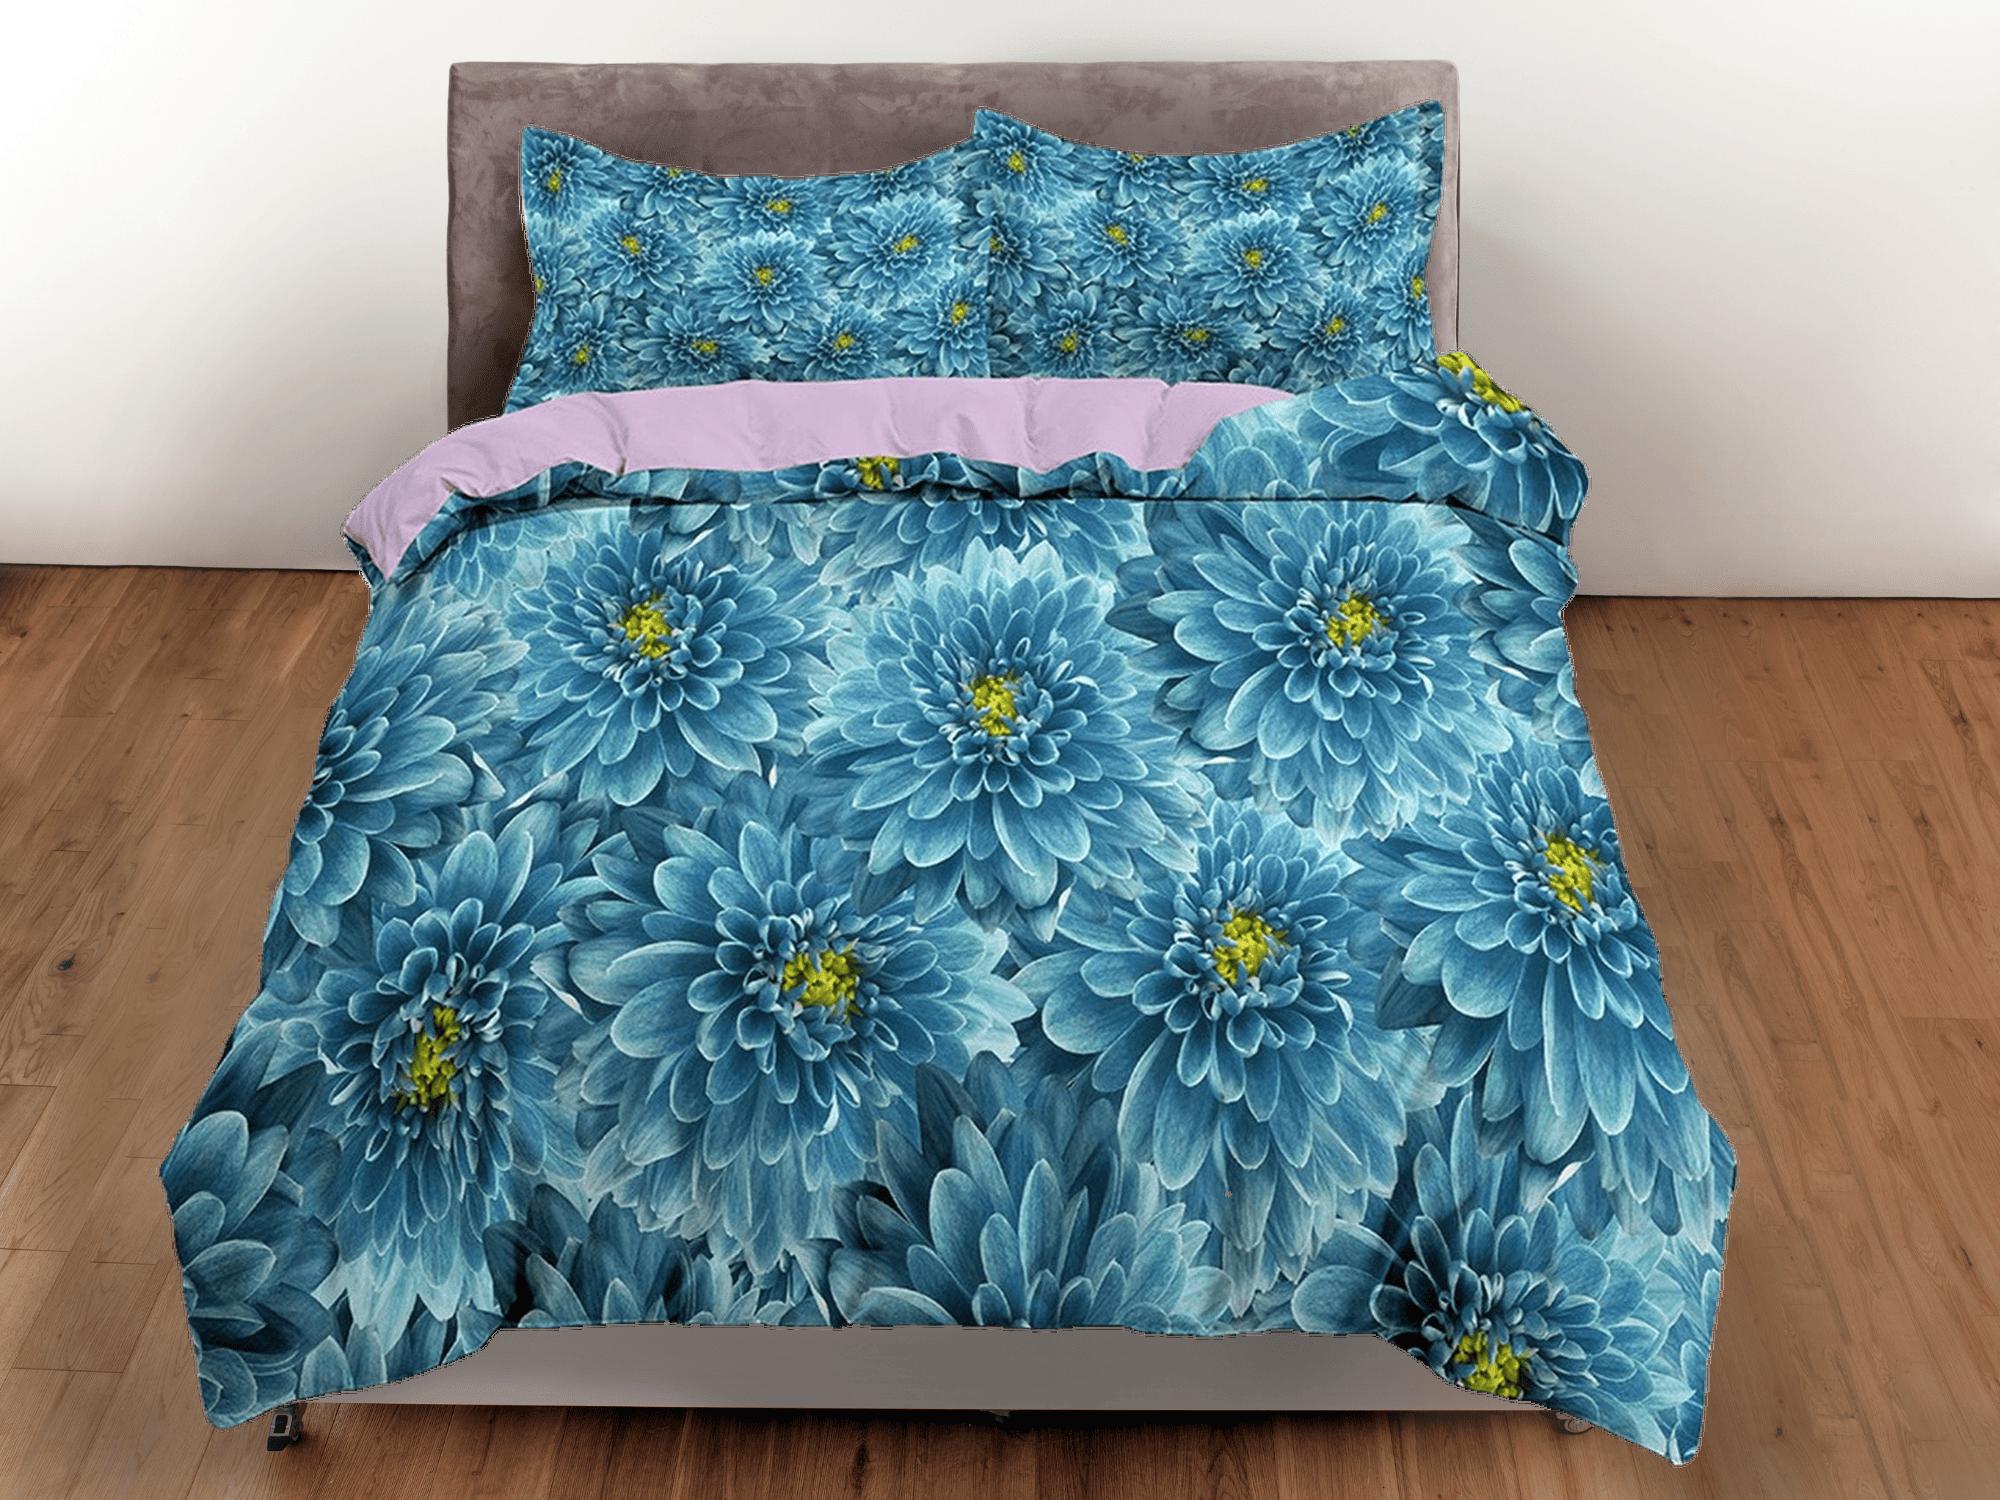 daintyduvet Chrysanthemum floral bedding, luxury duvet cover queen, king, boho duvet, designer bedding, aesthetic bedding, maximalist decor blue bedding